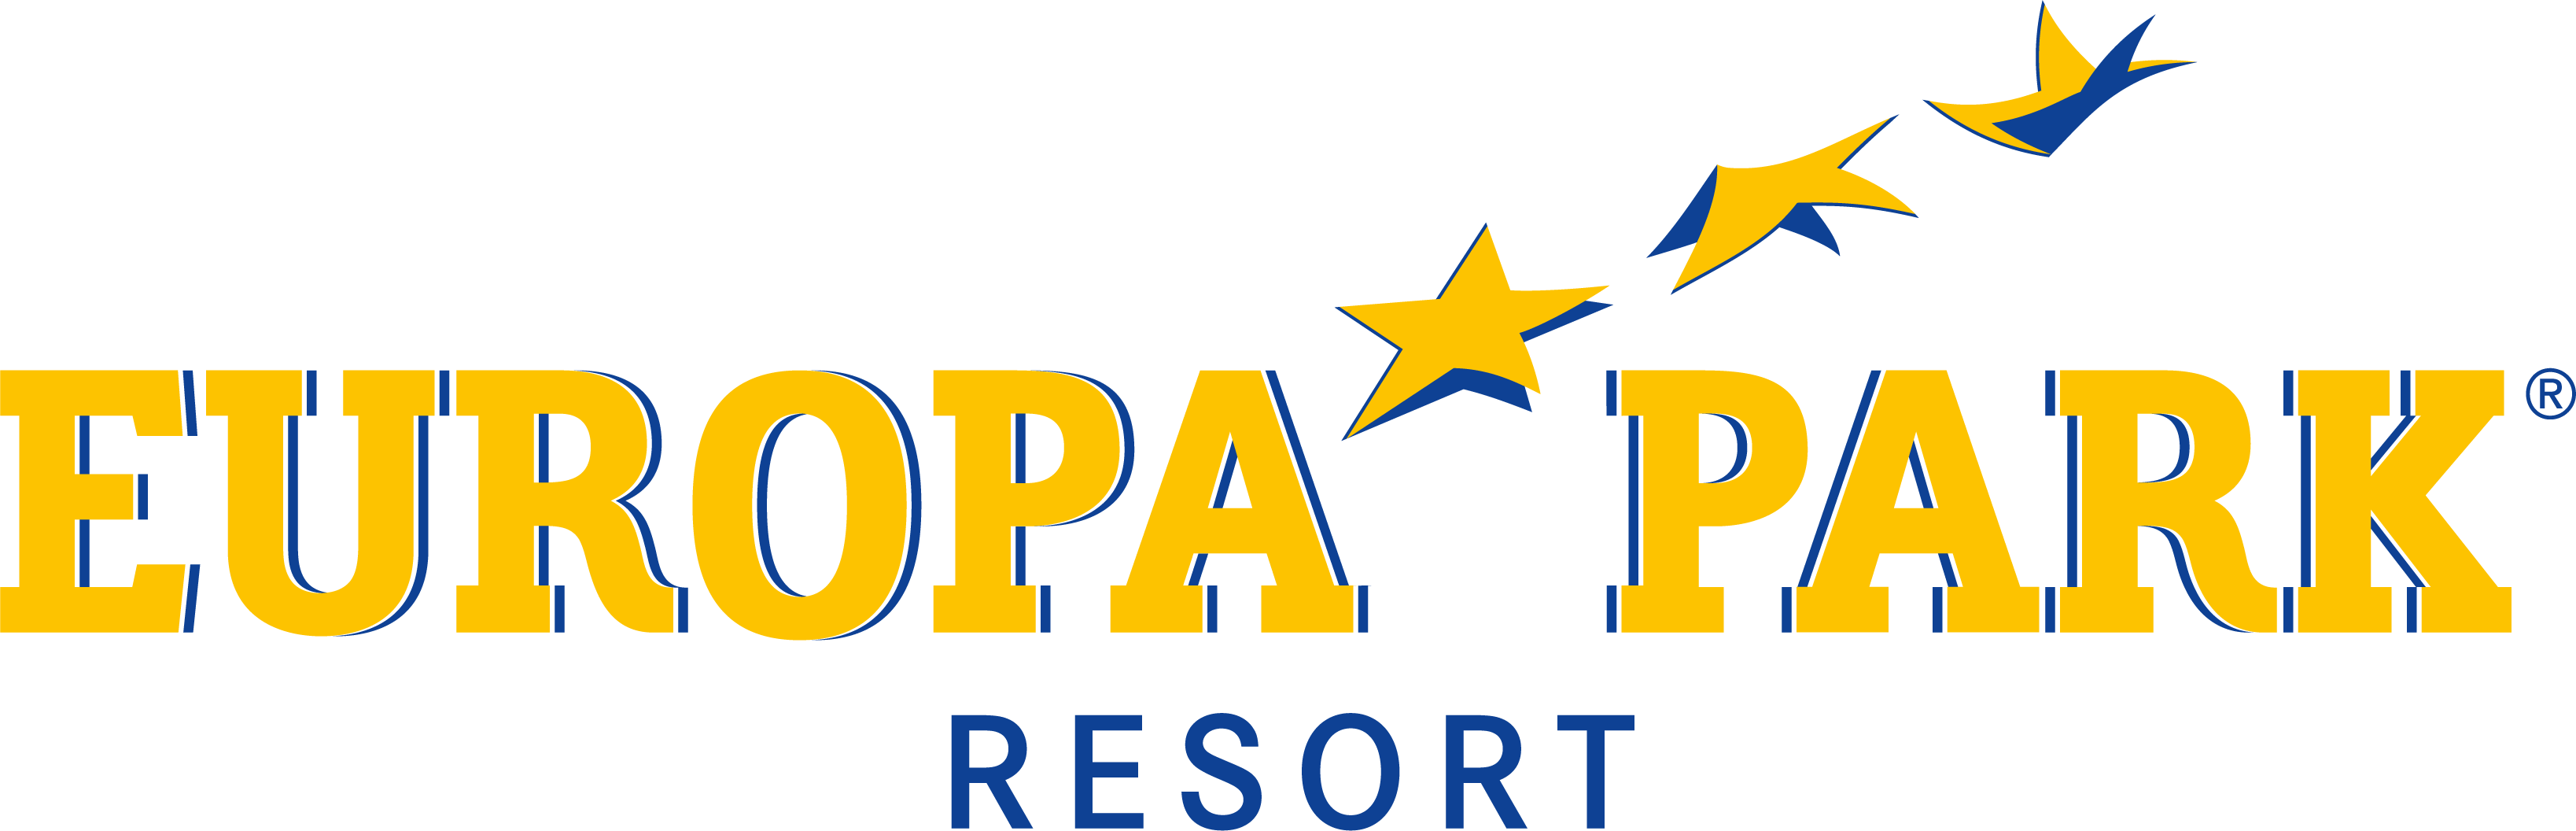 Logo Europa Park